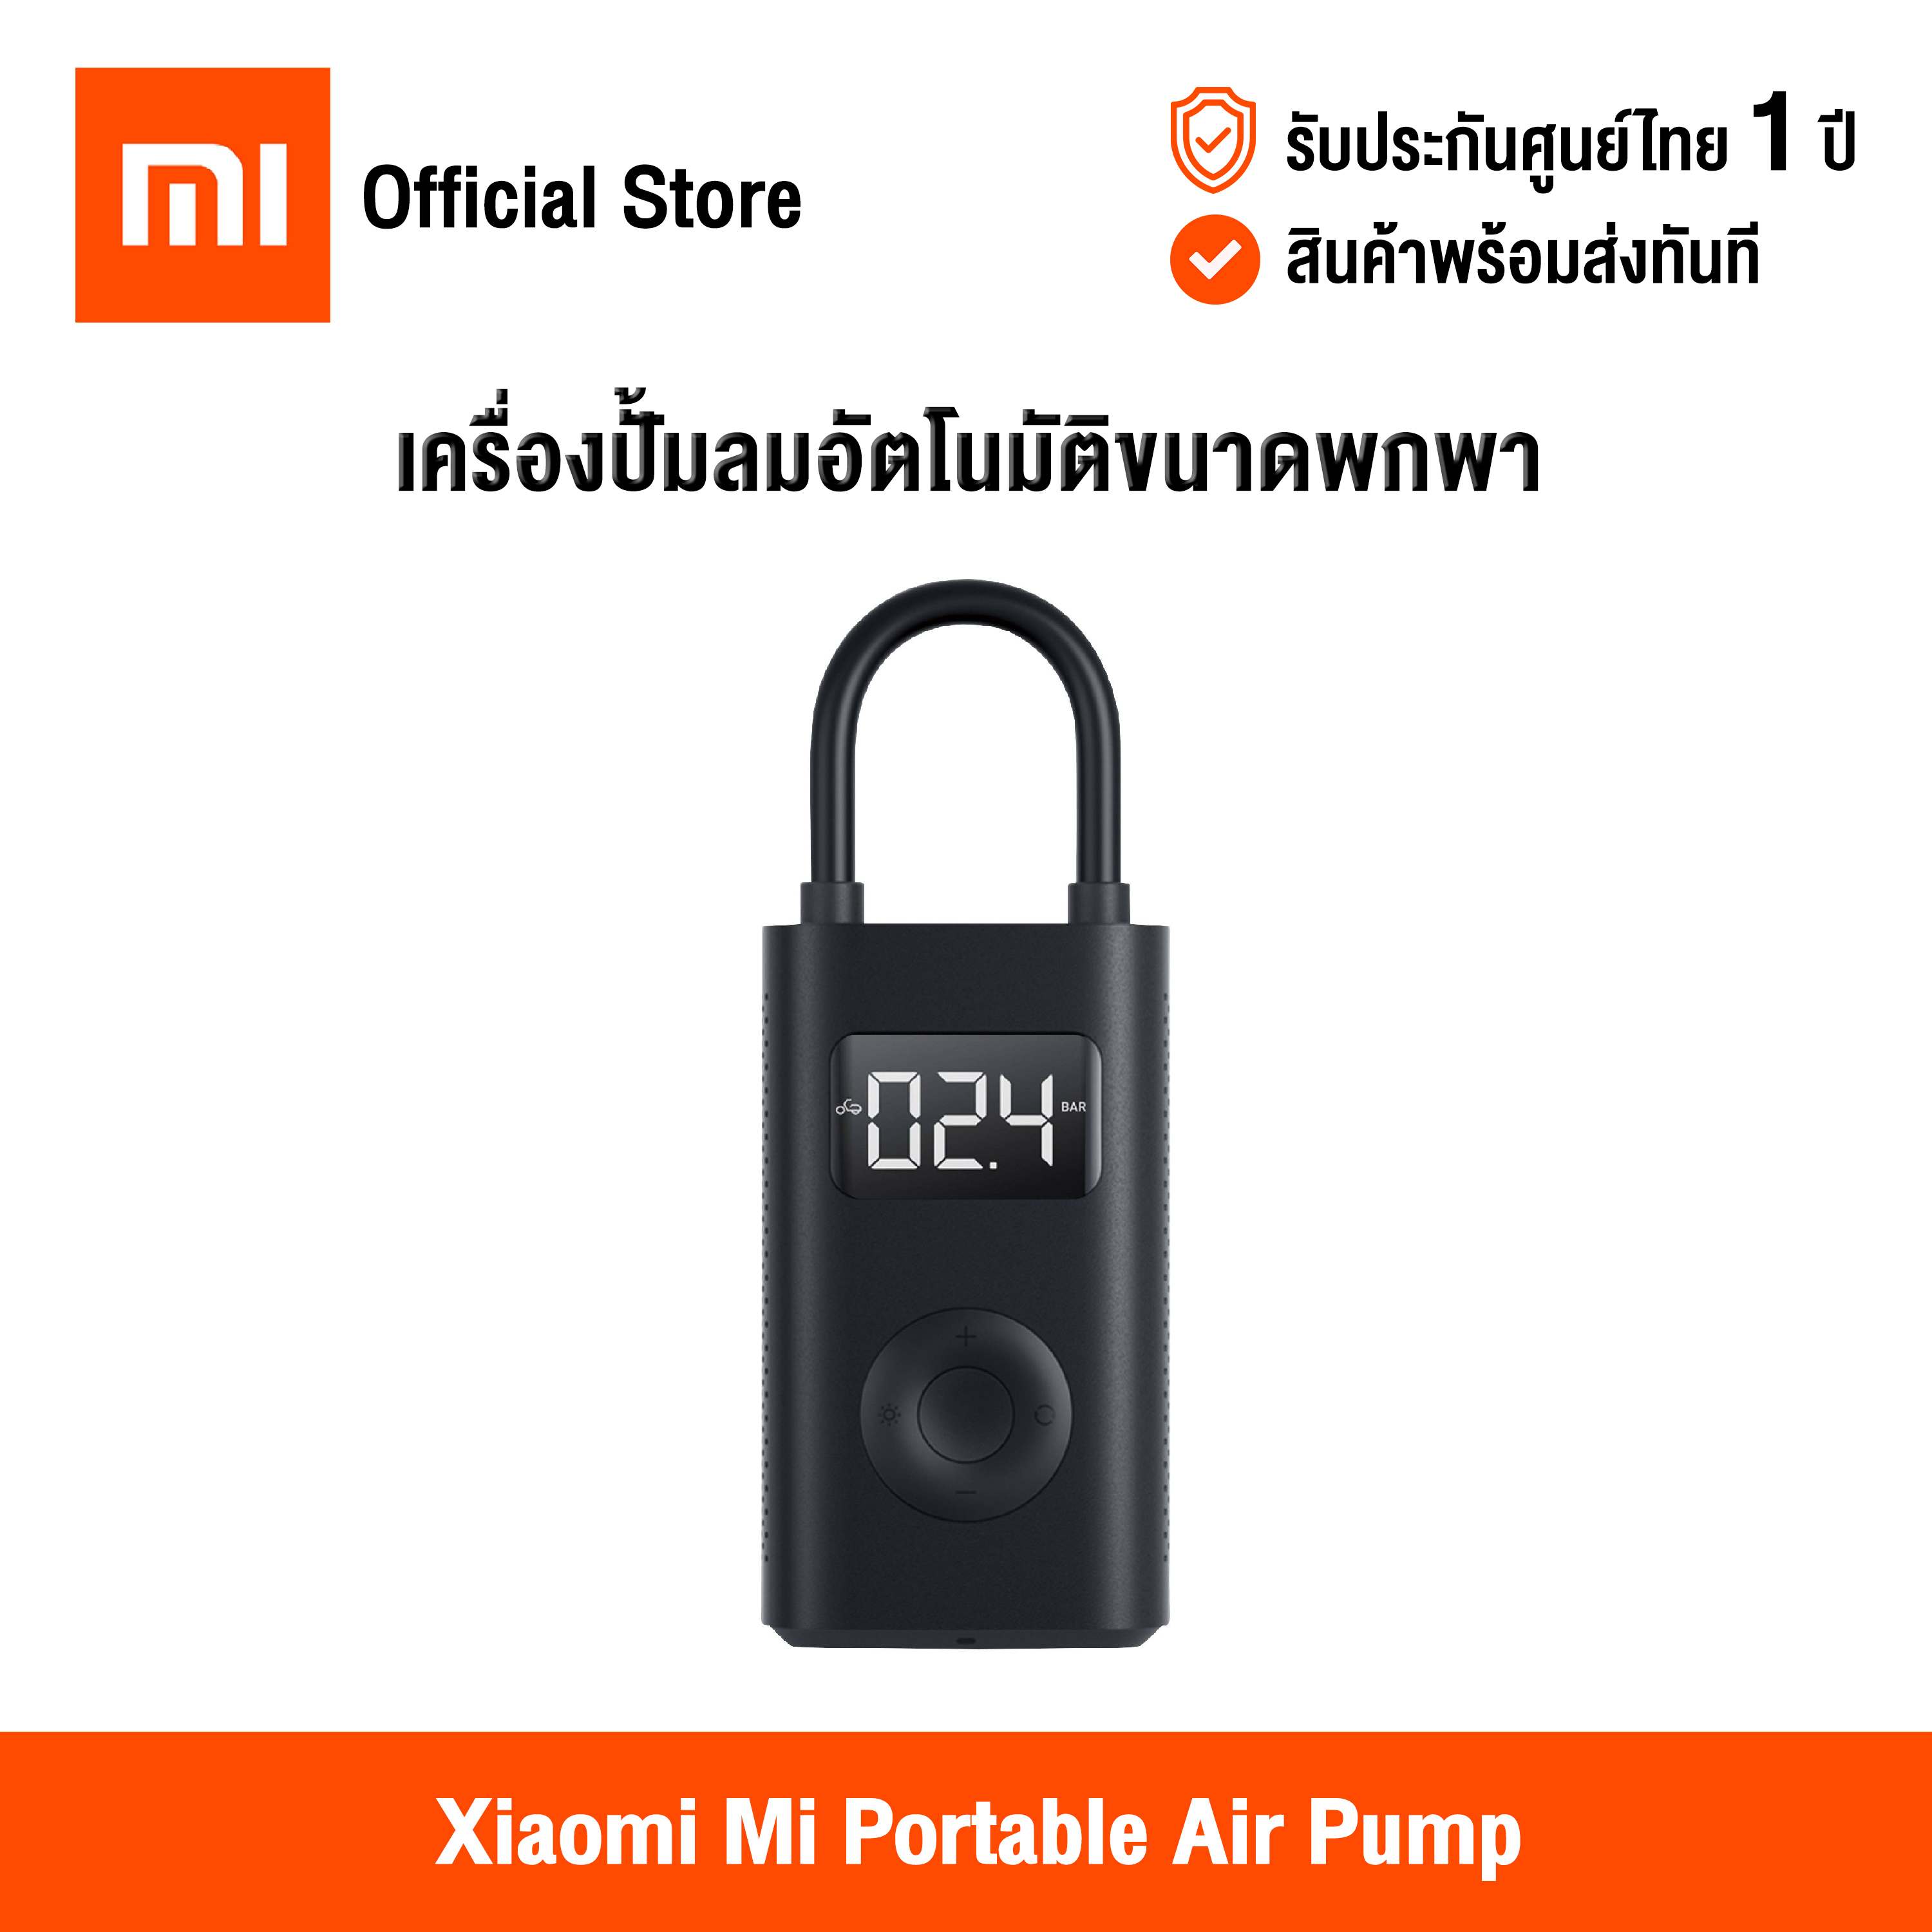 [ศูนย์ไทย] Xiaomi Mi Portable Air Pump (Global Version) เสี่ยวหมี่ เครื่องปั๊มลมอัตโนมัติขนาดพกพา